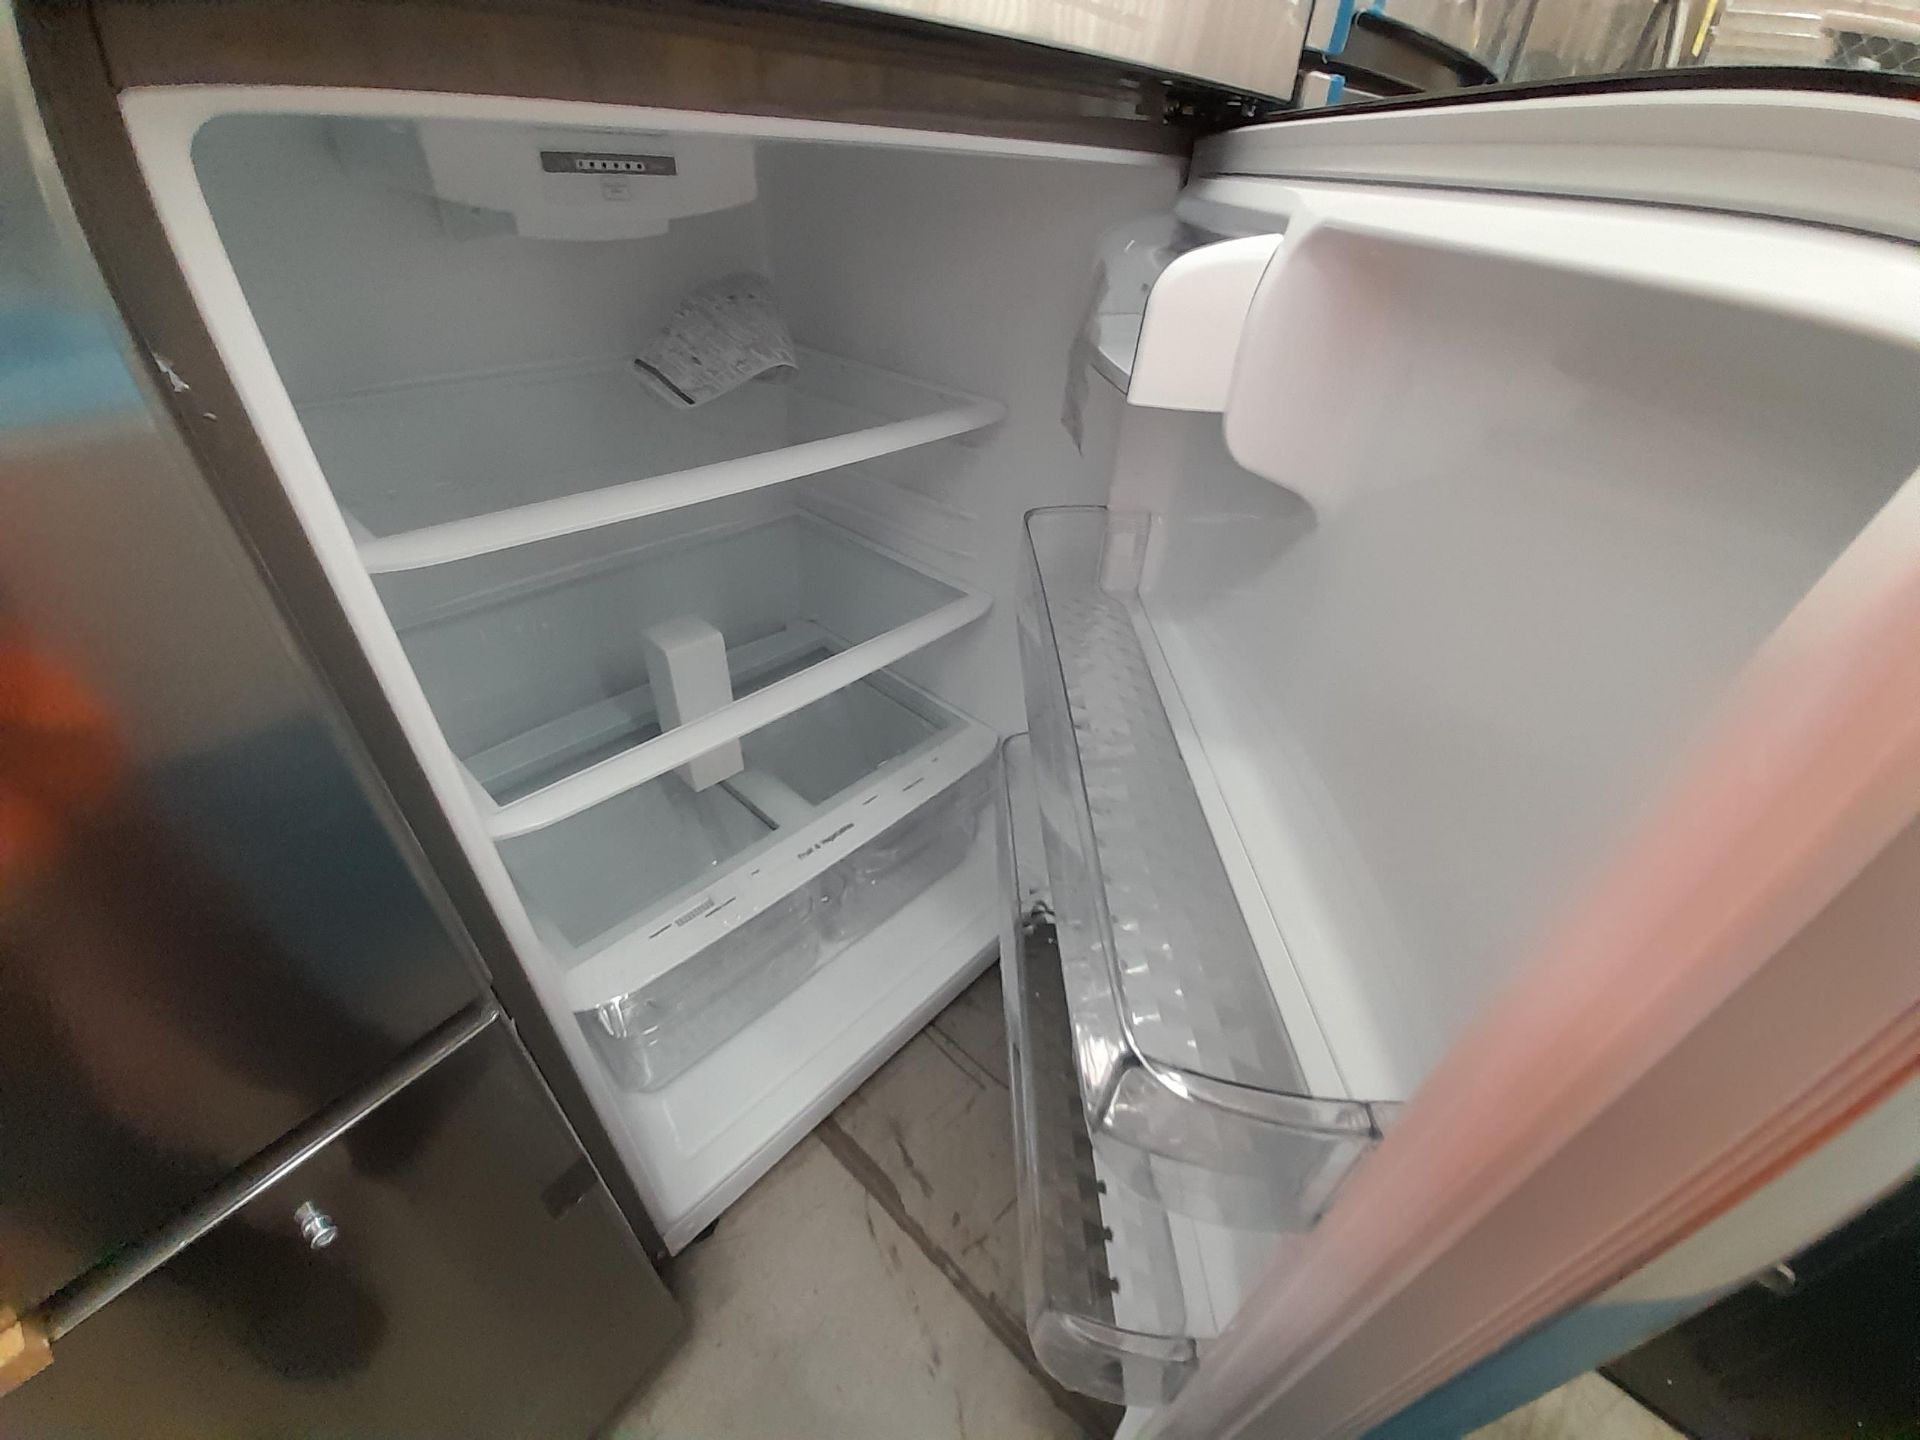 (Equipo nuevo) 1 Refrigerador Marca LG, Modelo GT24BS, Serie A2E194, Color GRIS. (Nuevo, excelente - Image 4 of 6